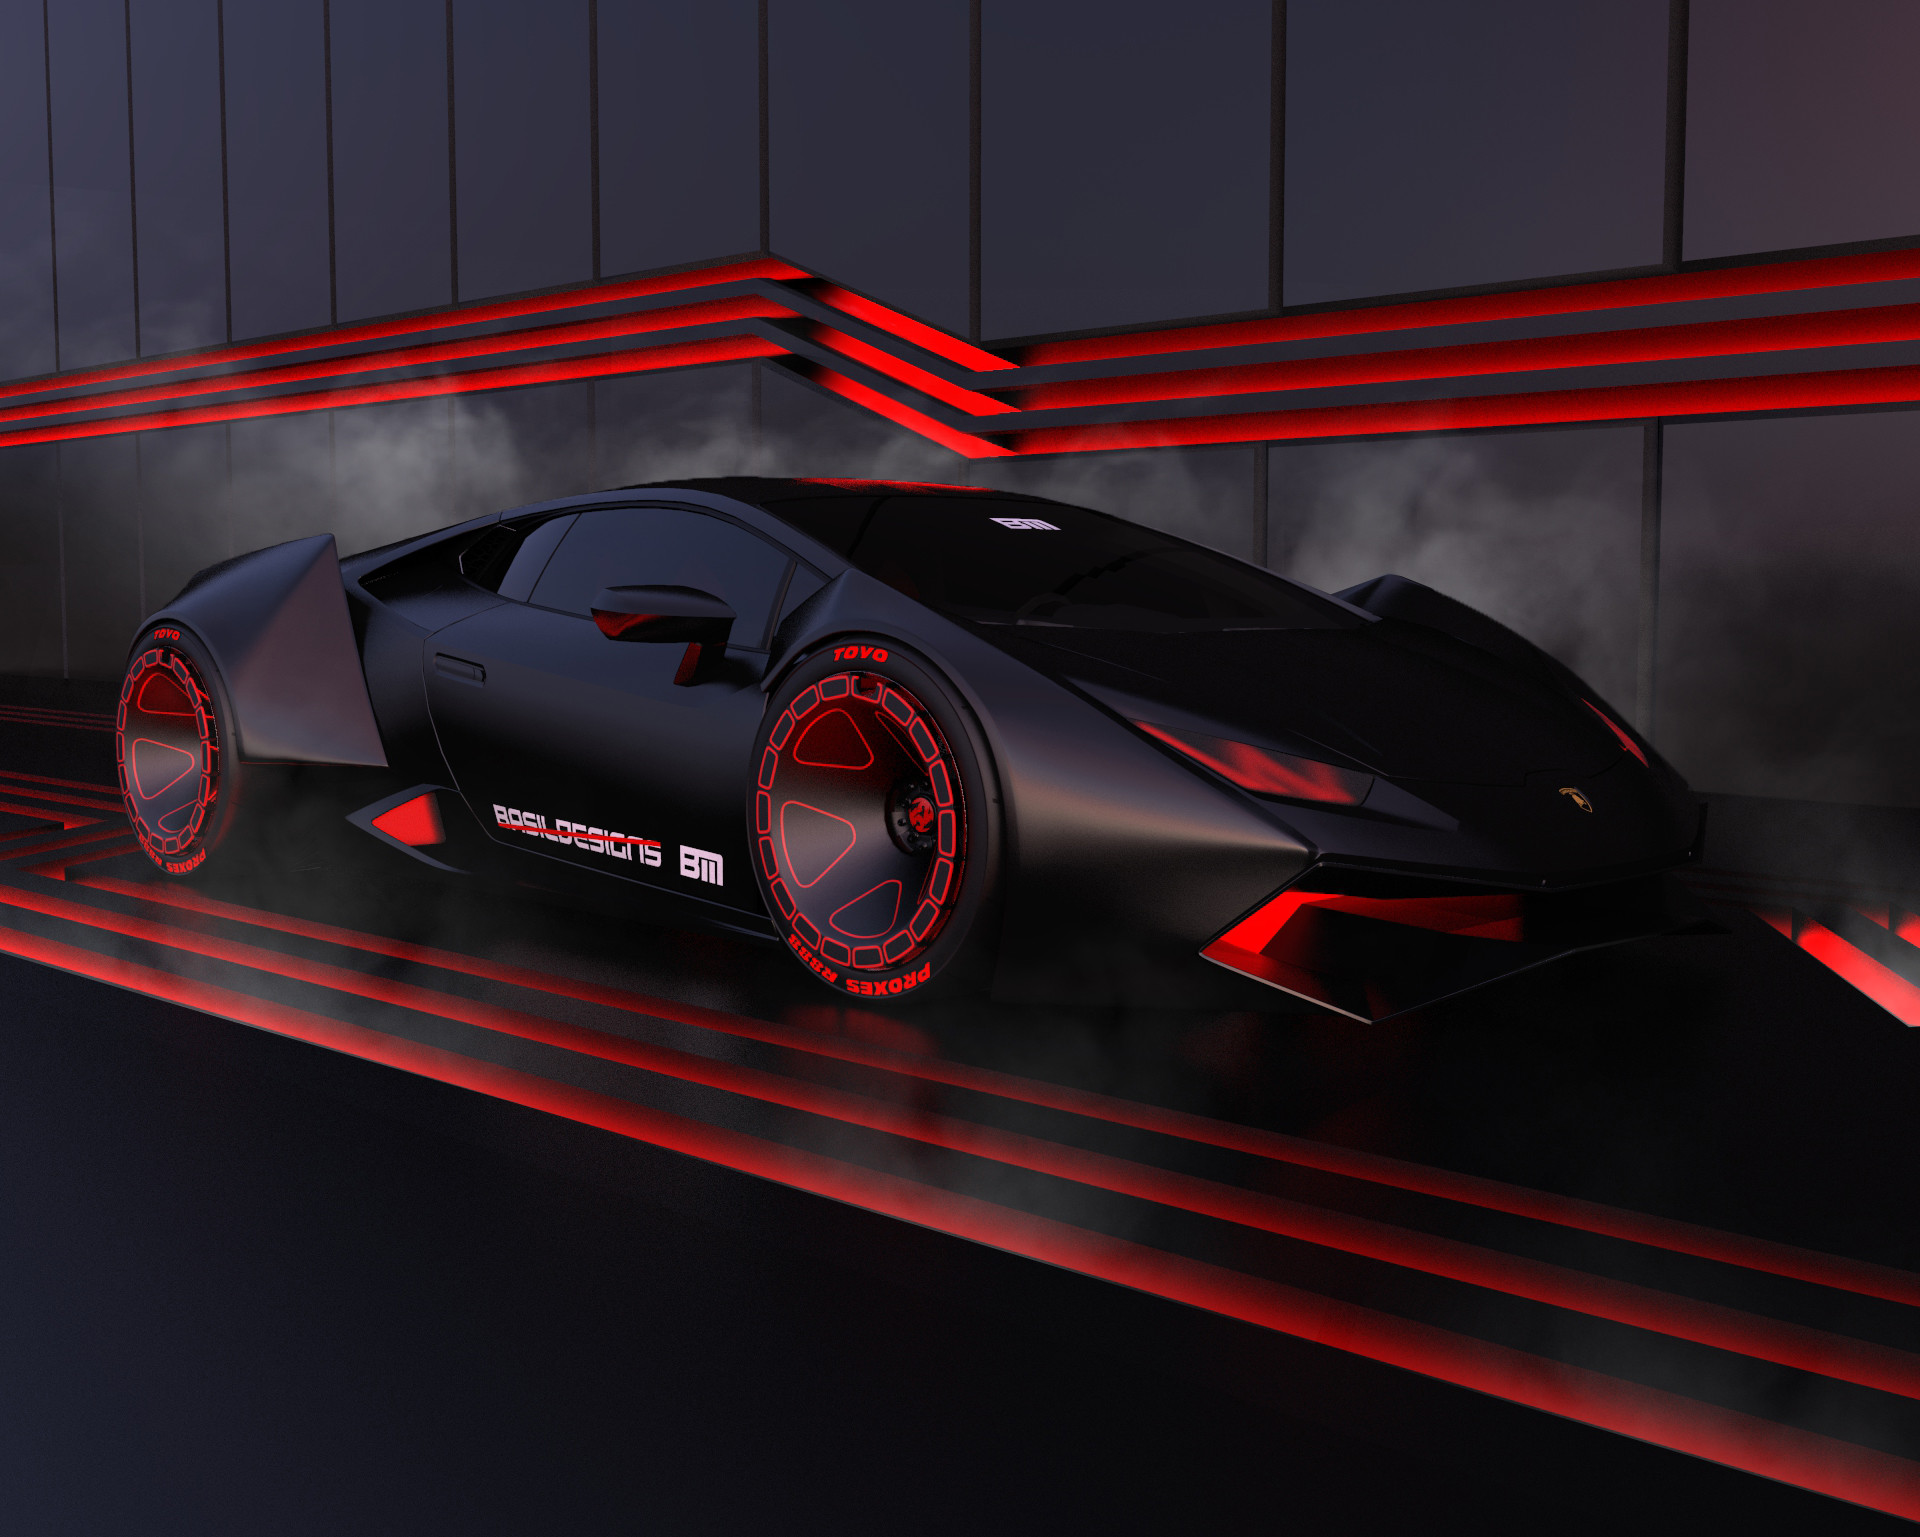 ArtStation - Cyberpunk Lamborghini Huracan